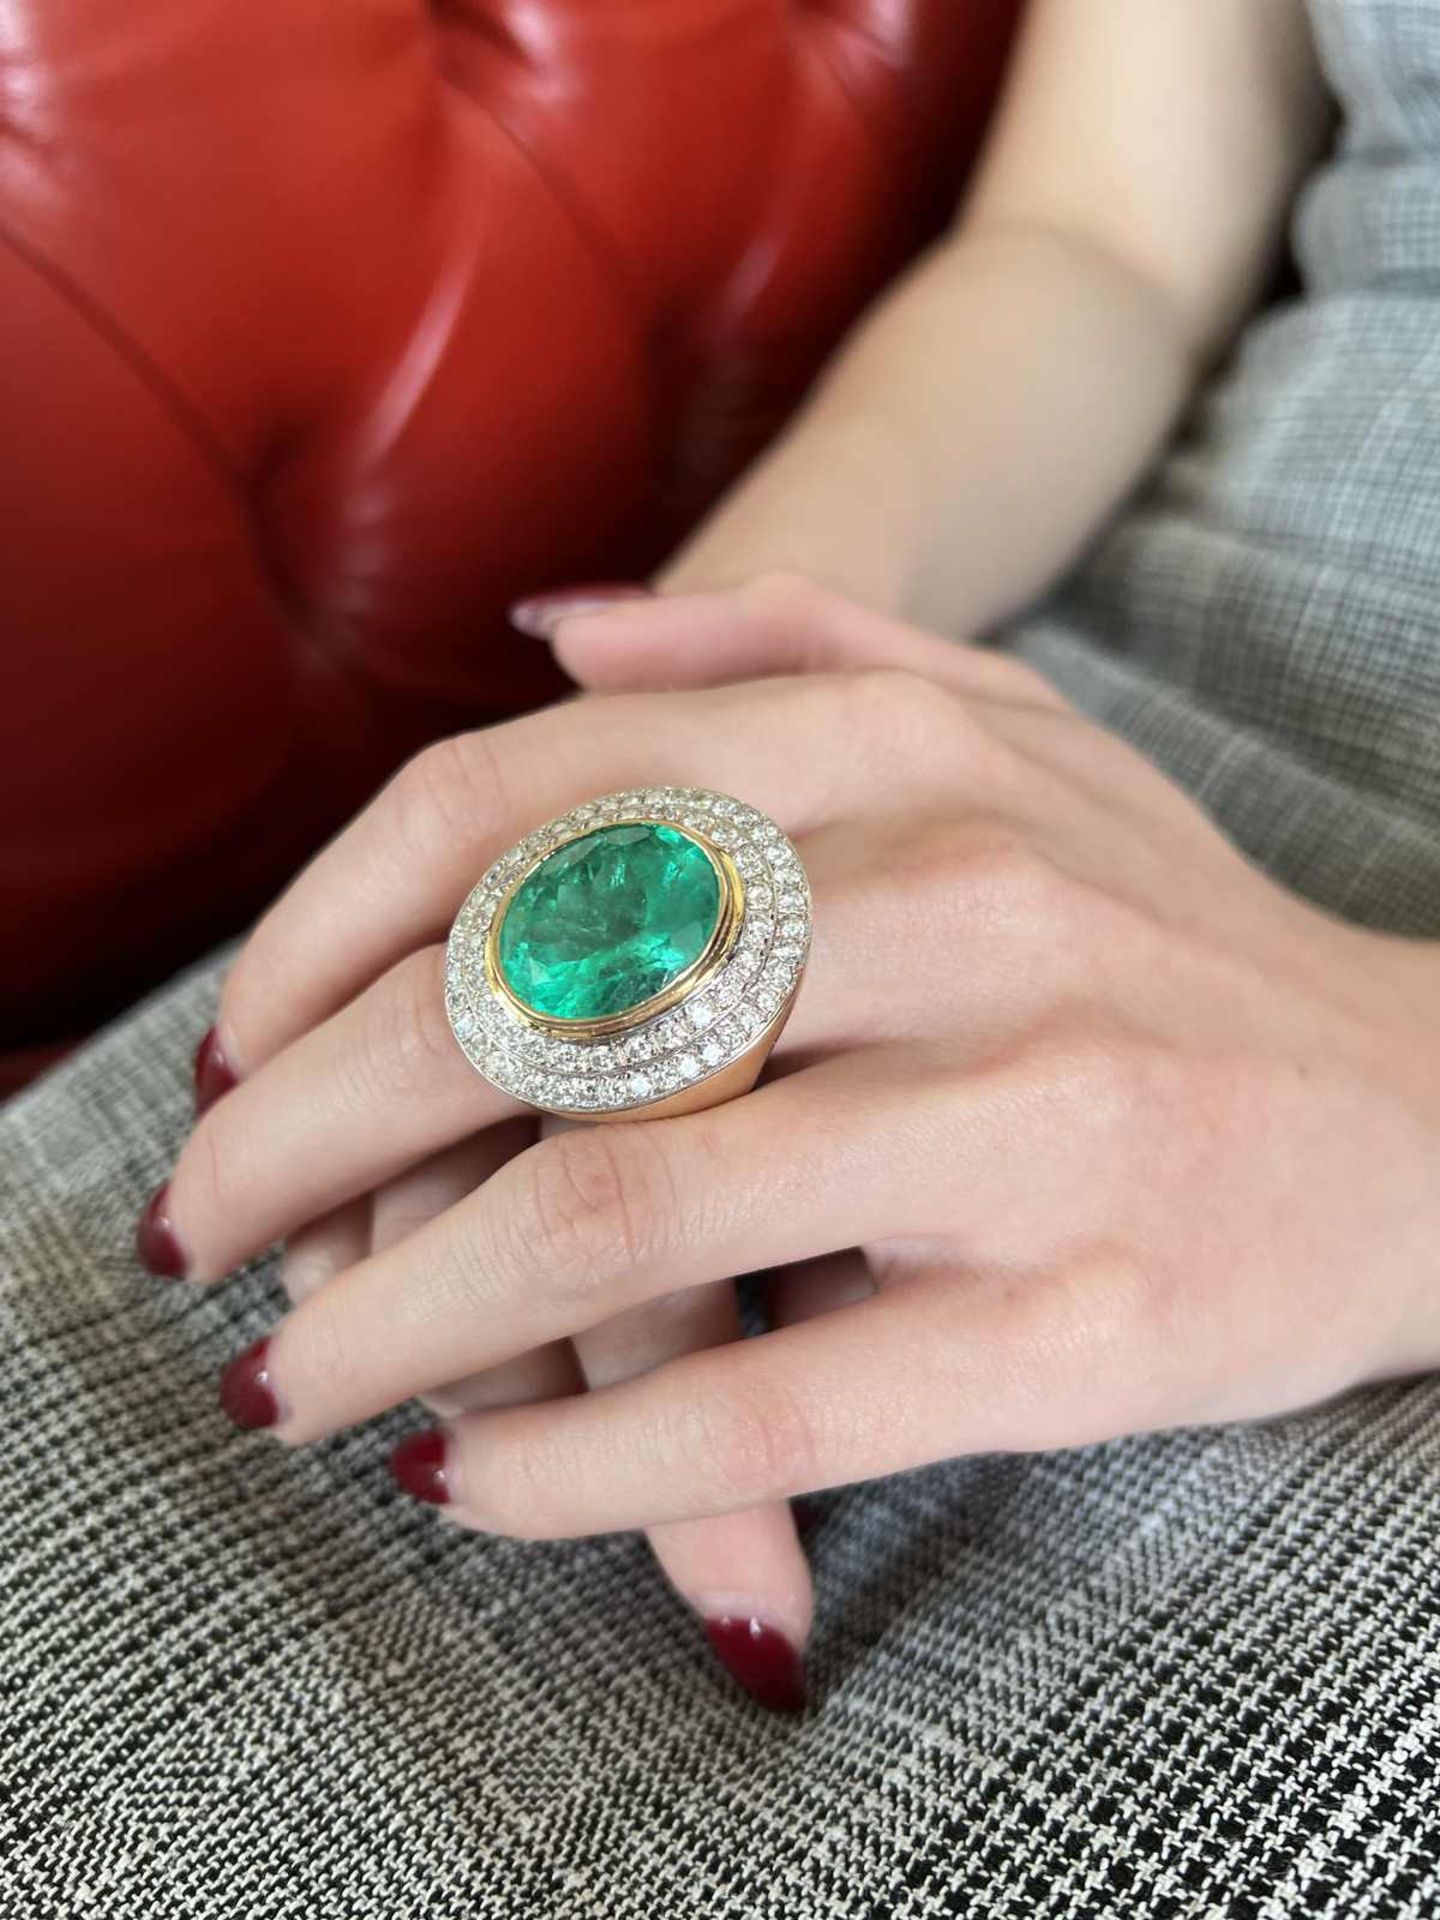 Smaragd-Brillant Ring Atemberaubendes Schmuckstück, signiert HOFK, in Gelbgold/Weissgold 14K mit - Image 4 of 6